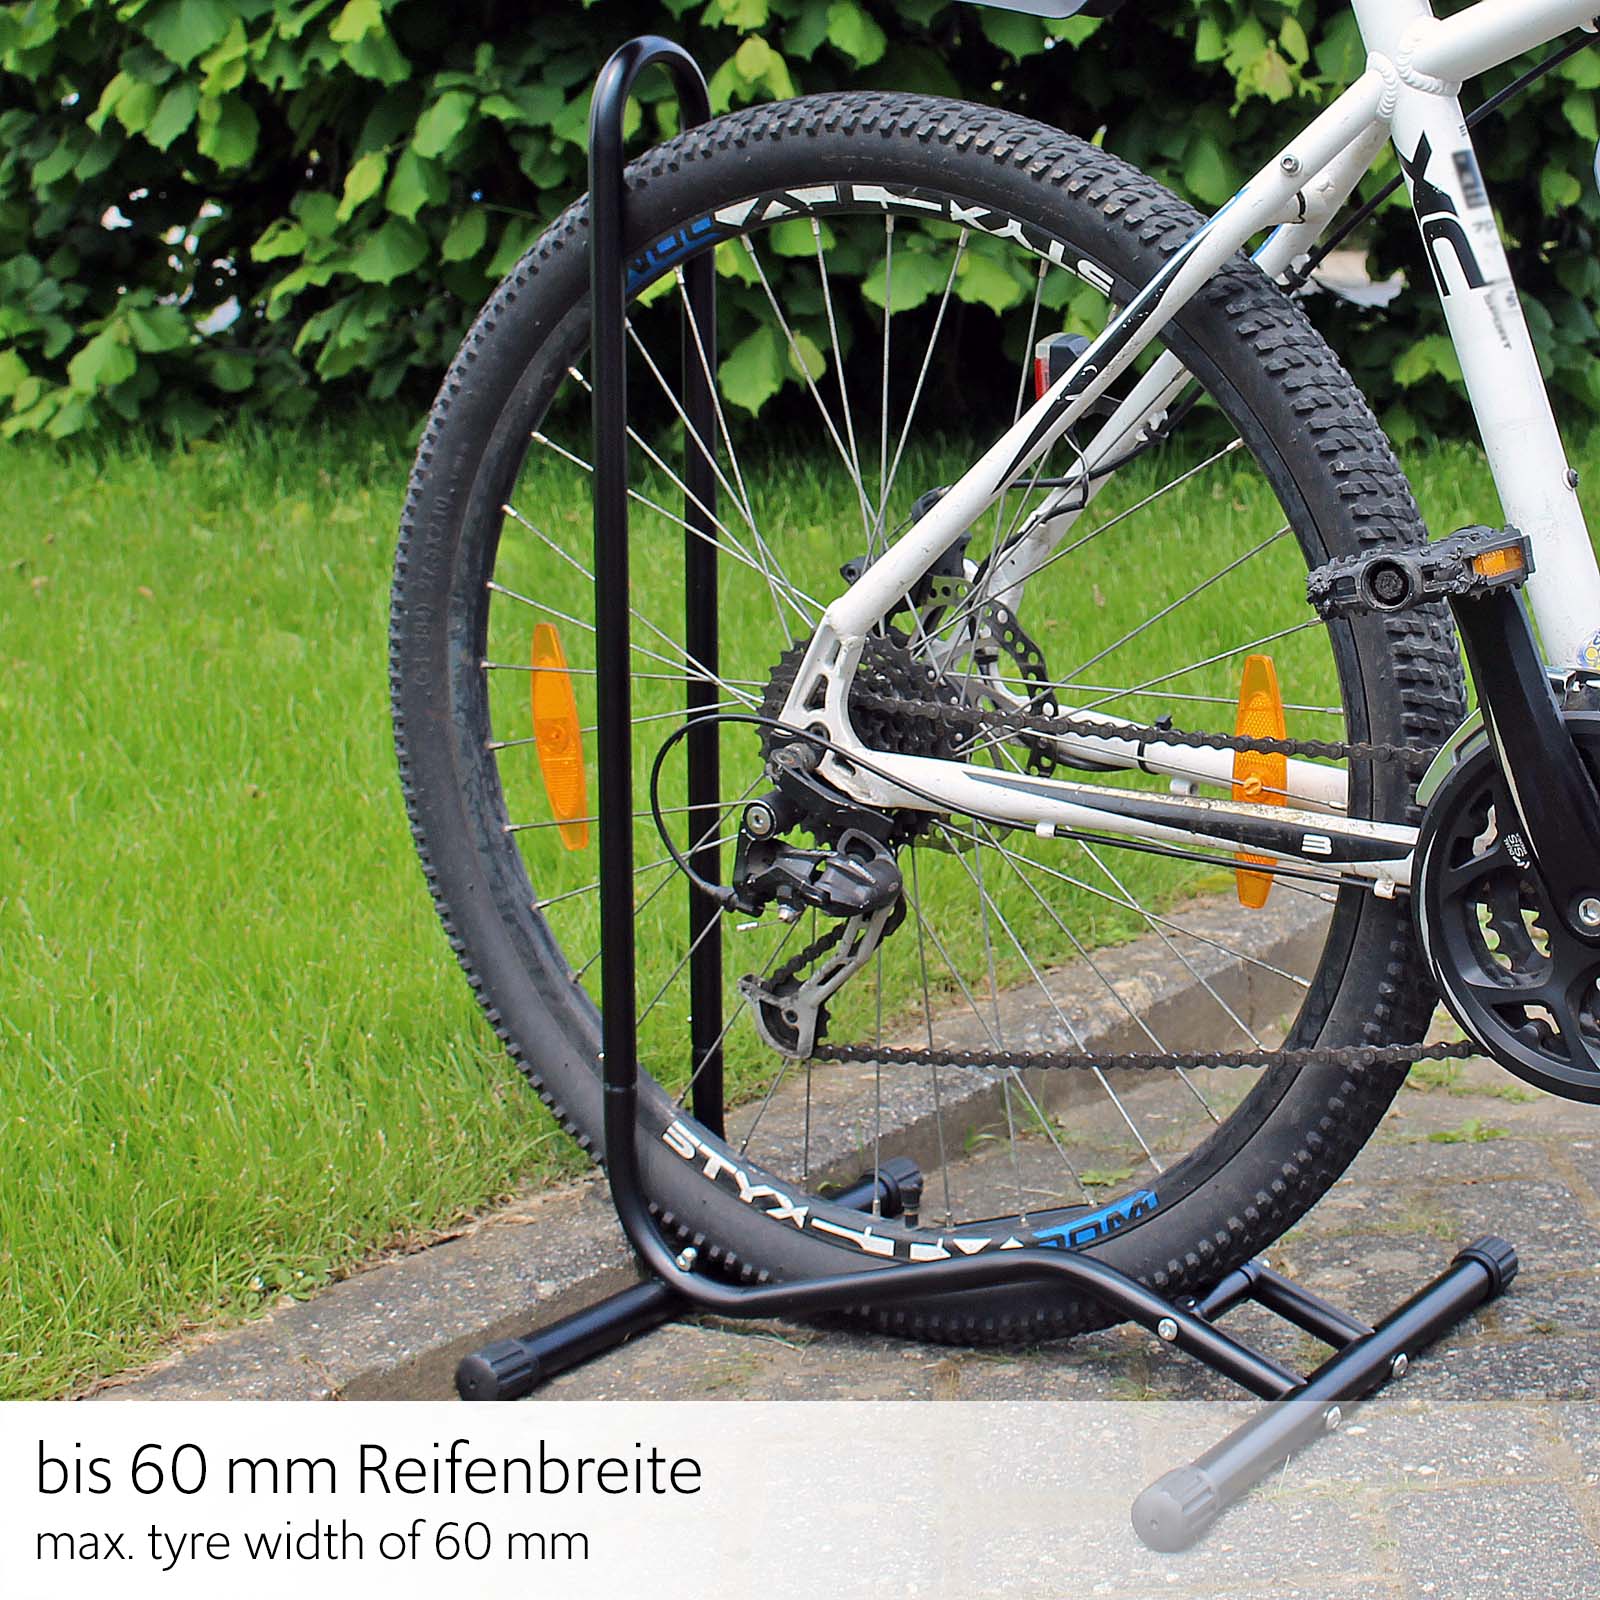 🚲 Soporte bicicletas suelo de 10 a 14 bicis con tubo acero robusto de 31  mm –